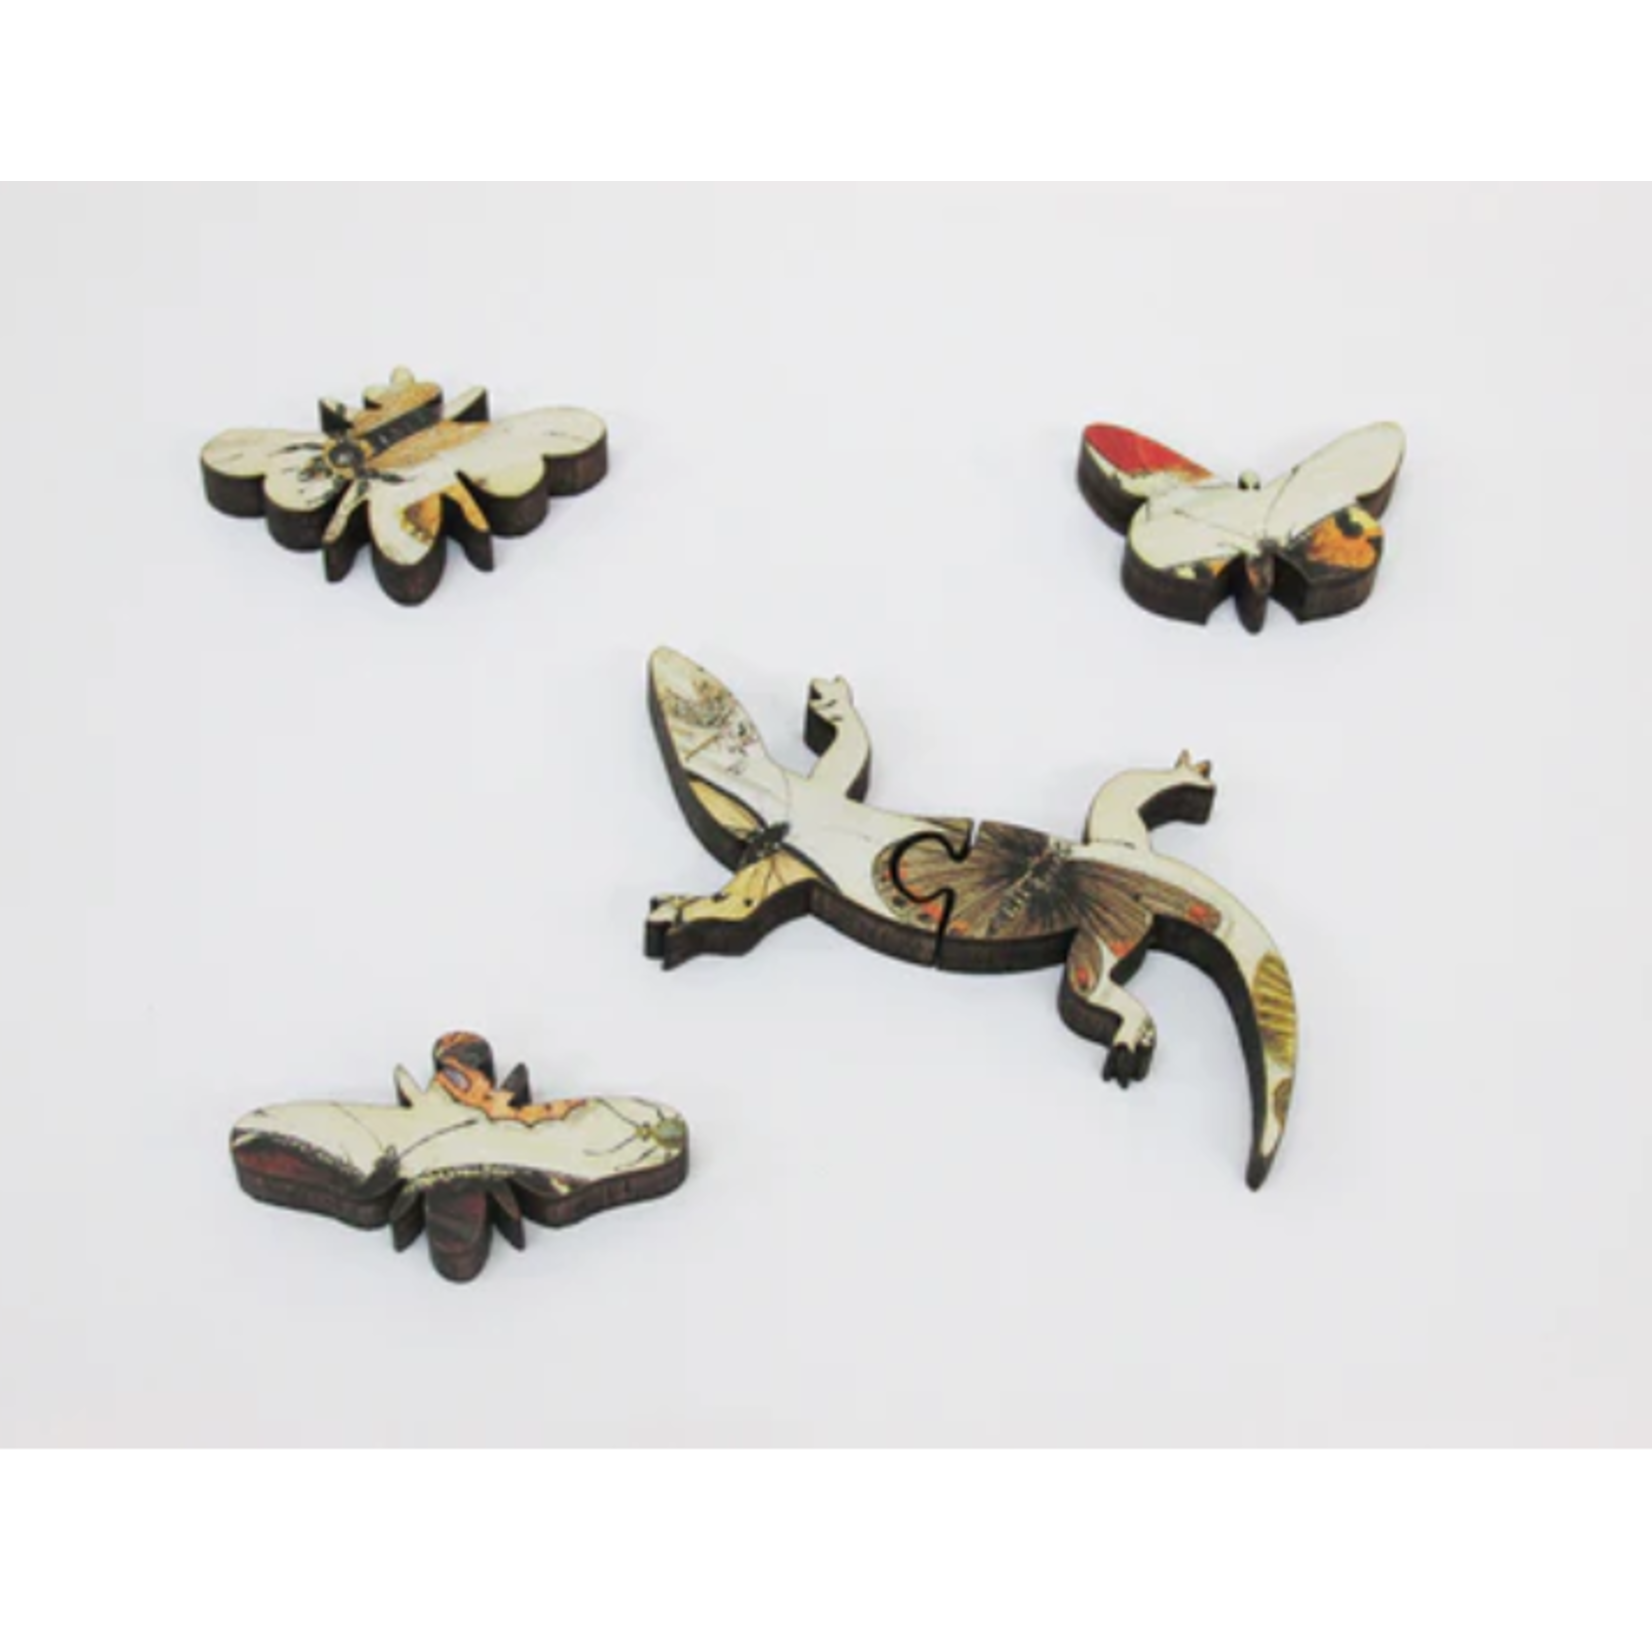 Artifact Puzzles Butterflies by Jan van Kessel, 161-Piece Wooden Jigsaw Puzzle  by Artifact Puzzles